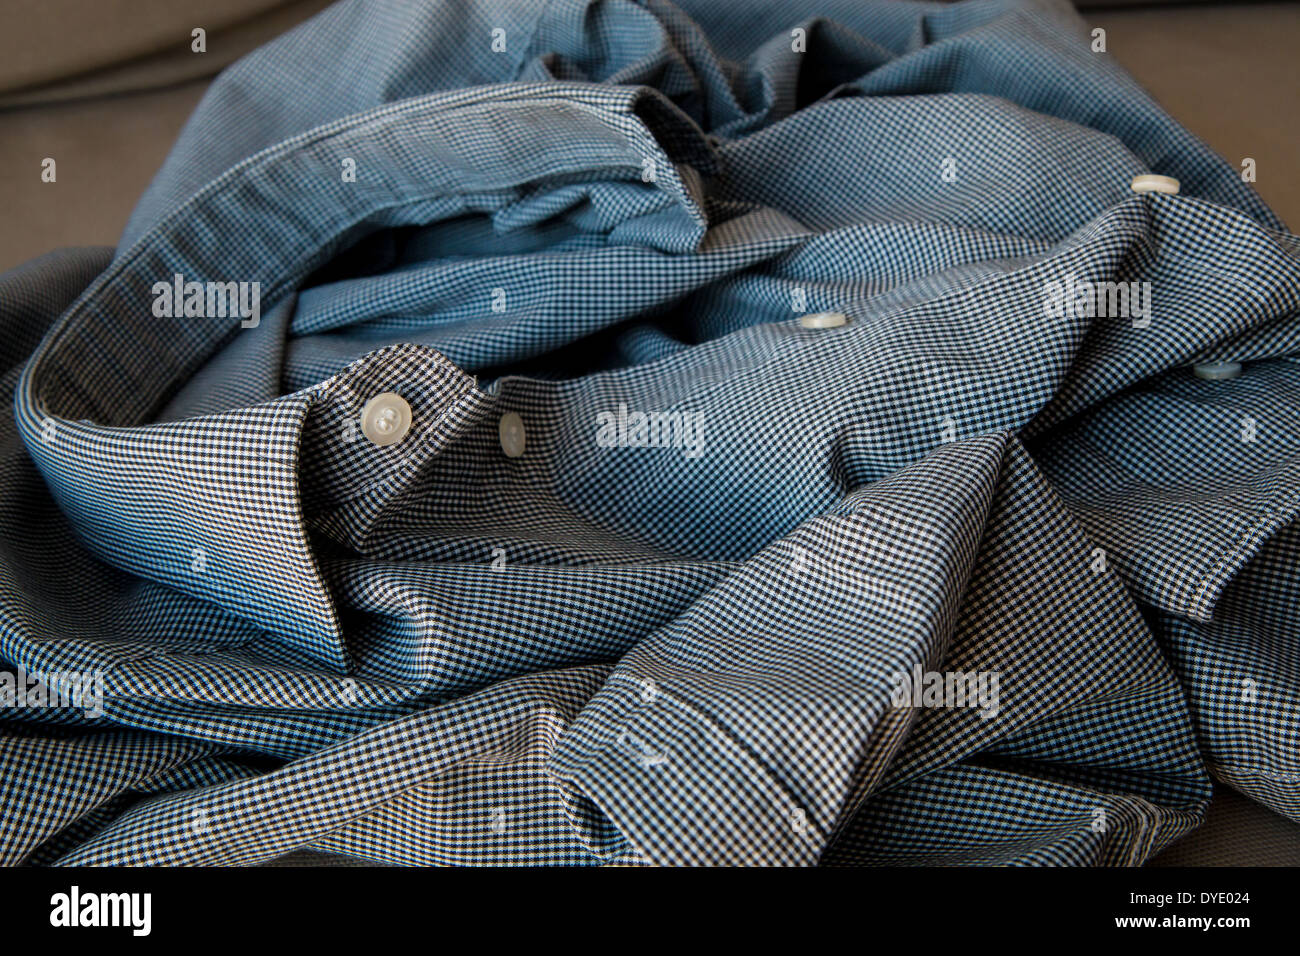 Crumpled shirt Stock Photo